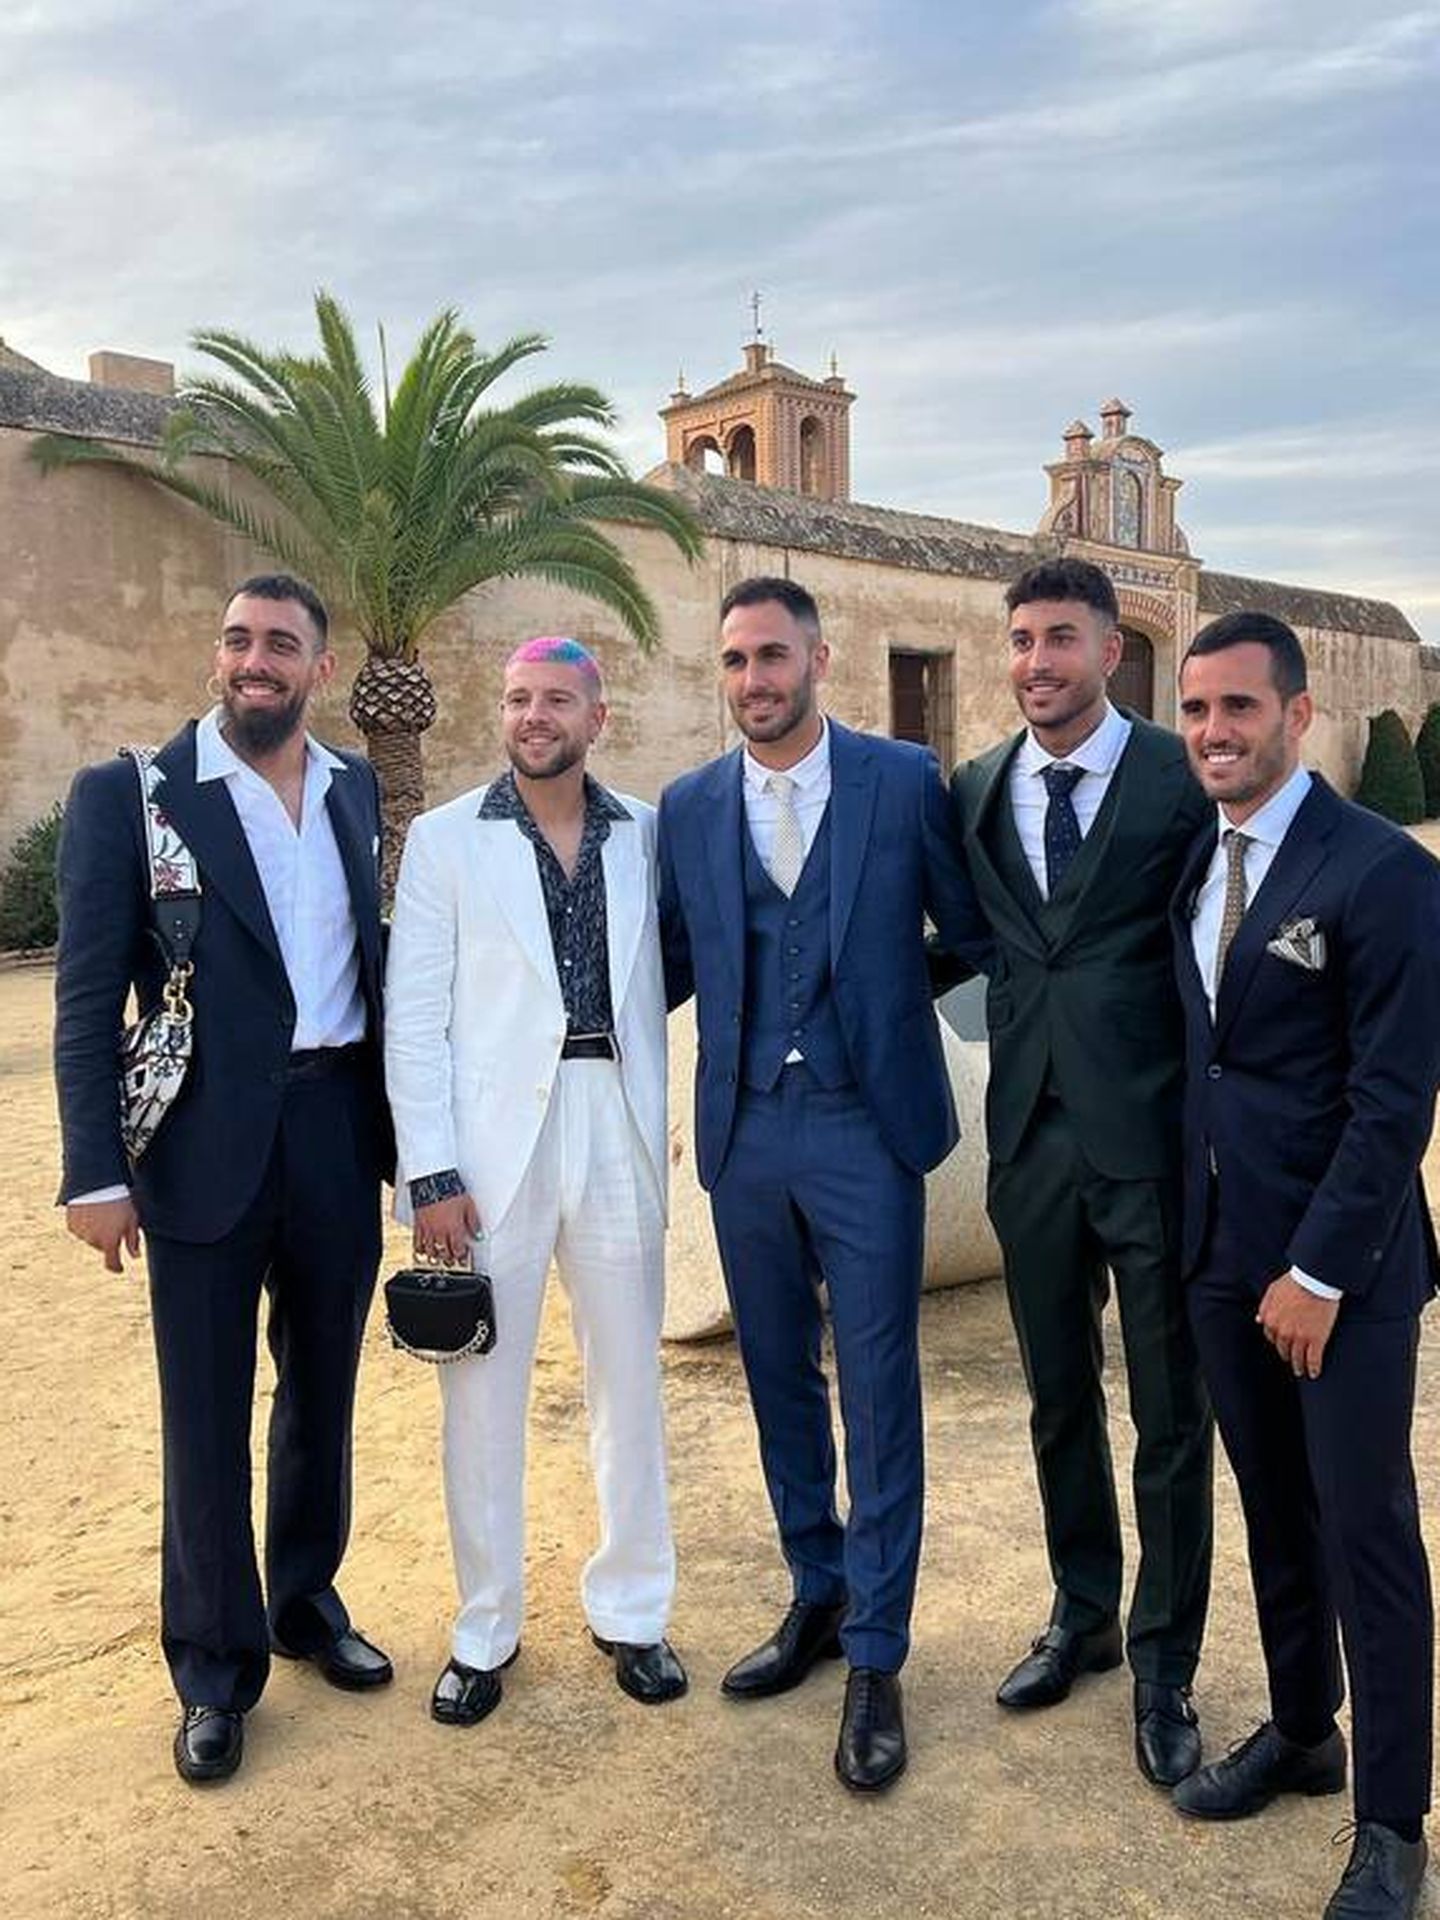 Borja Iglesias y Aitor Ruibal acuden con bolso a la boda de unos amigos. (Instagram/@vicama8)